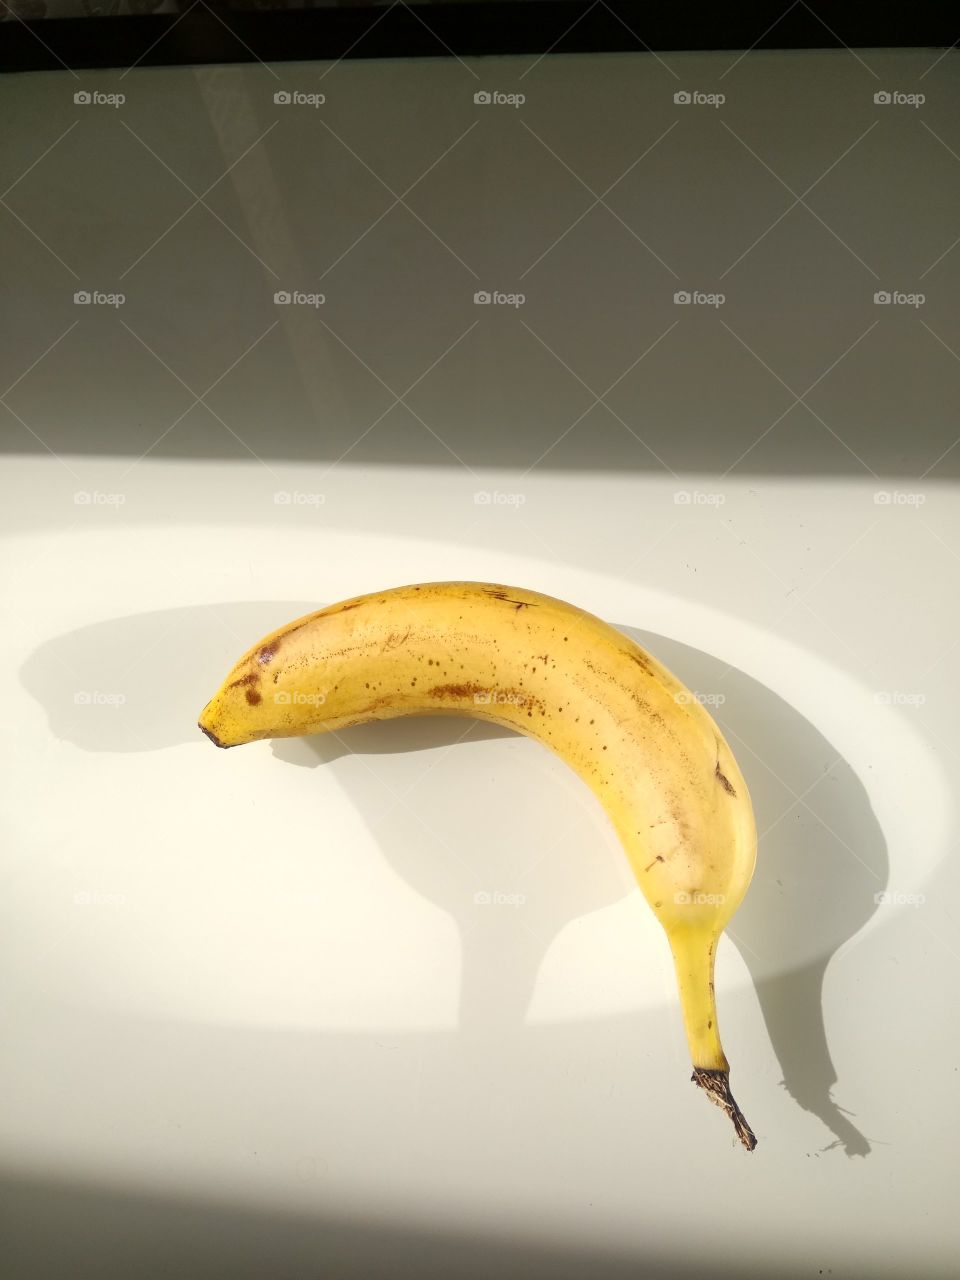 Банан и двойная тень. Фрукт один а тени две.
Banana and double shadow. One fruit and two shadows.